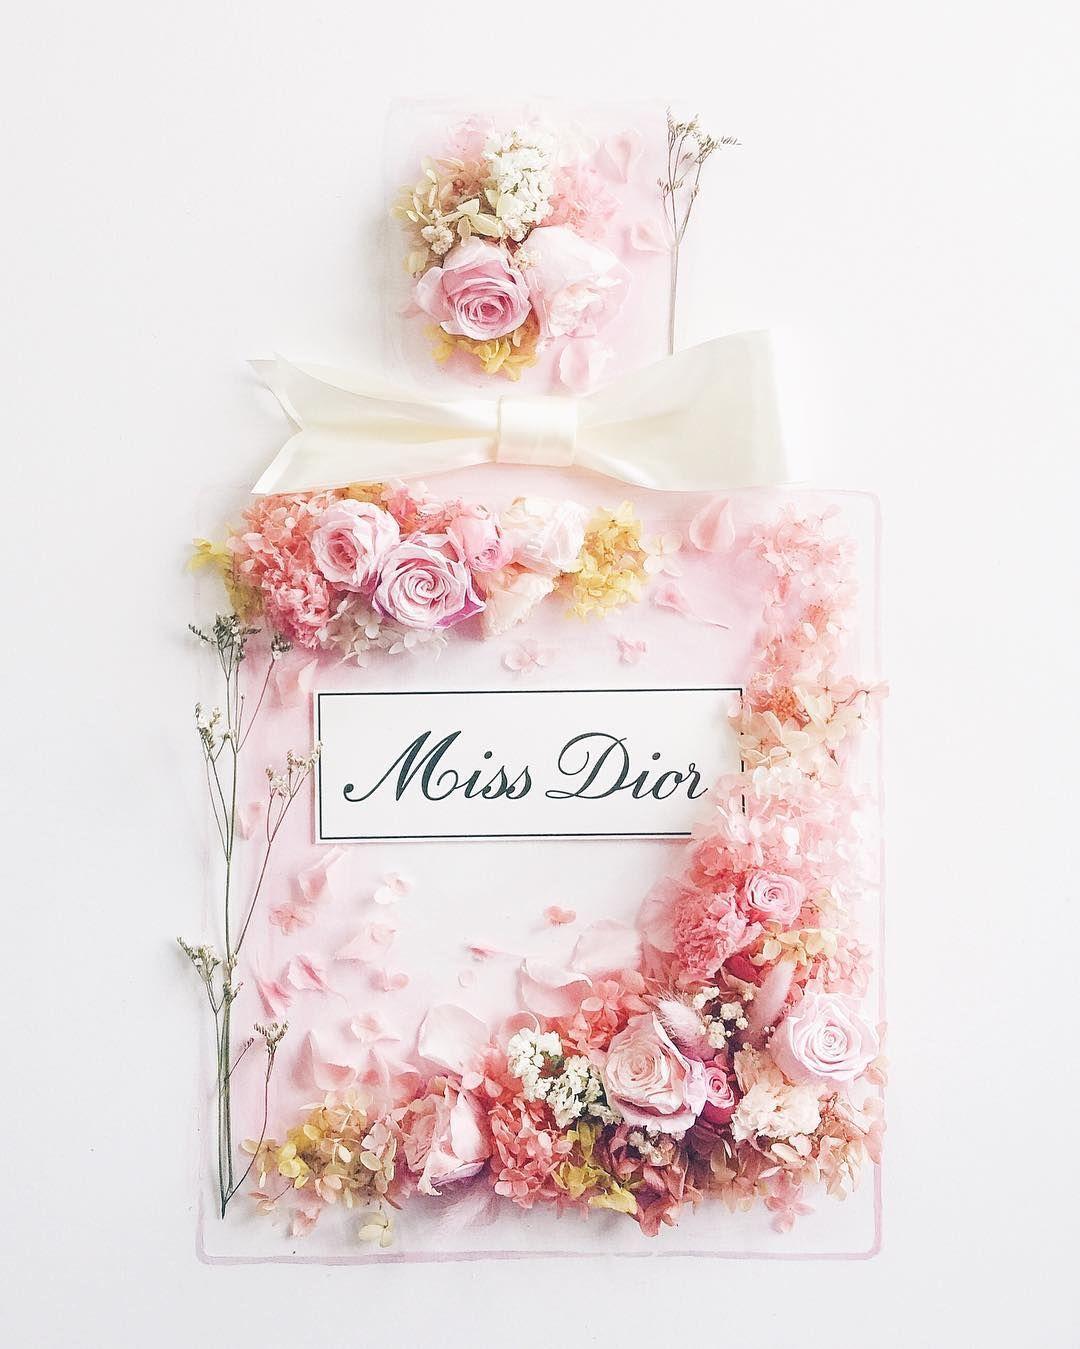 Hình nền Christian Dior mang lại sự sang trọng và đẳng cấp cho màn hình thiết bị của bạn. Với thiết kế đơn giản, nhưng không kém phần tinh tế, hình nền sẽ giúp bạn thể hiện phong cách thời trang đầy sáng tạo và cá tính của mình. Hãy cùng khám phá và trải nghiệm ngay hình nền Christian Dior với chất lượng hoàn hảo nhất!